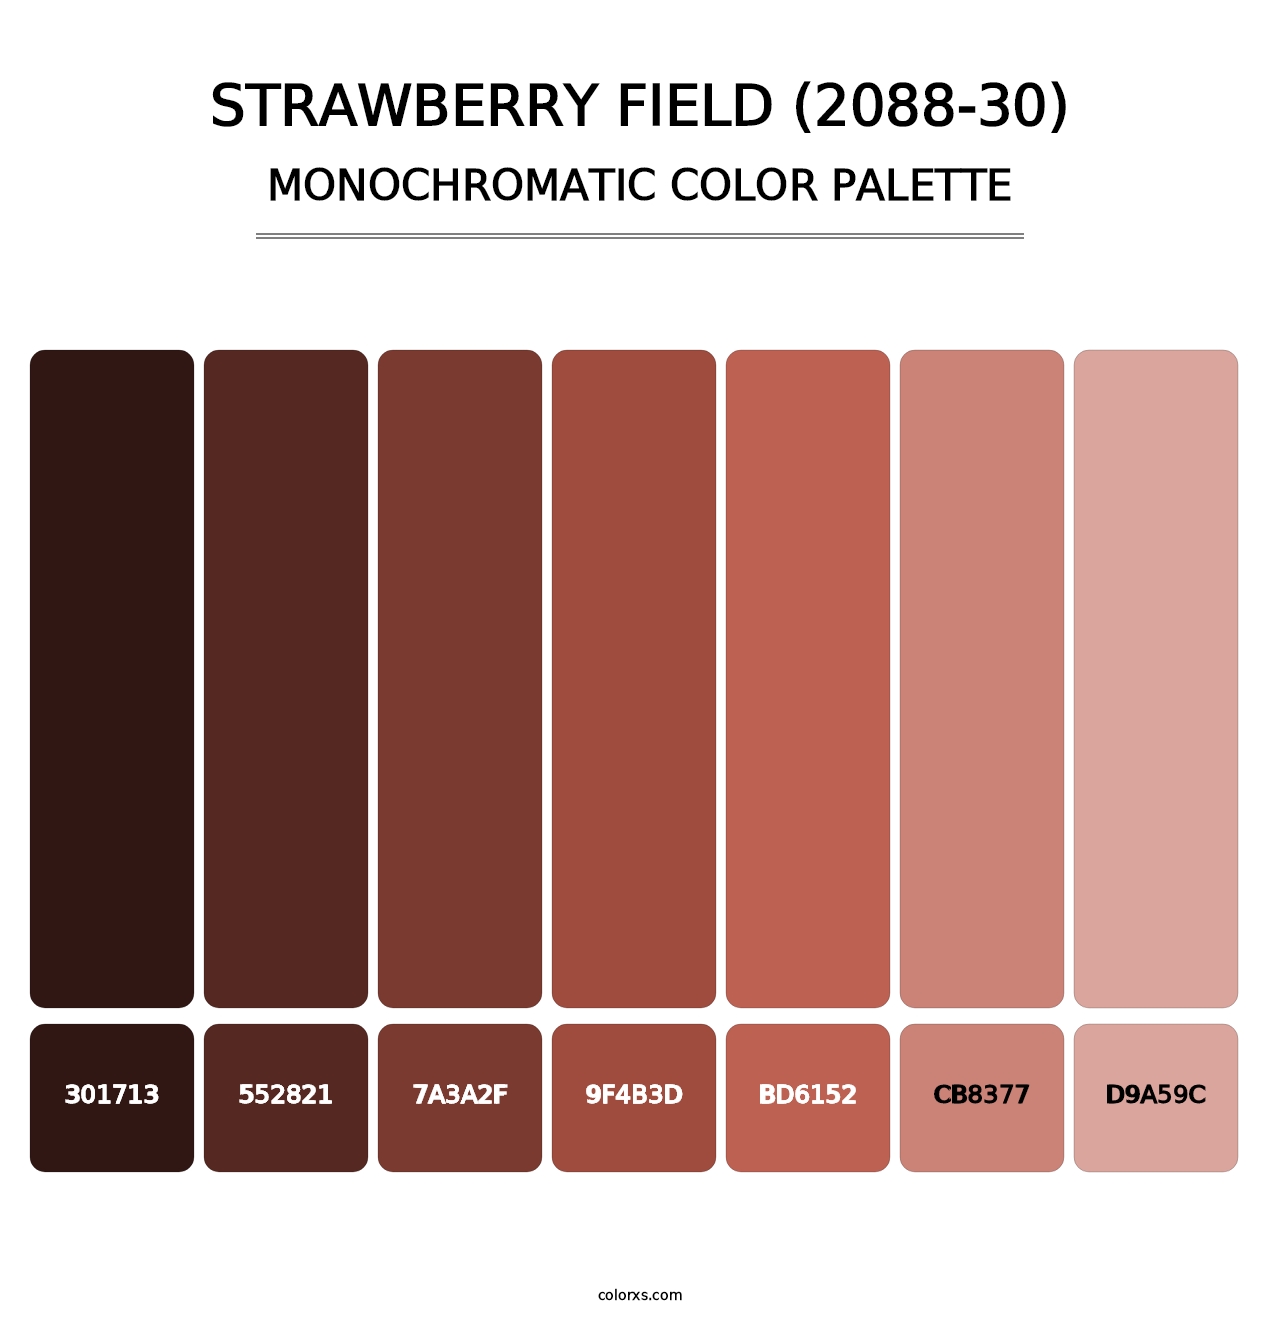 Strawberry Field (2088-30) - Monochromatic Color Palette